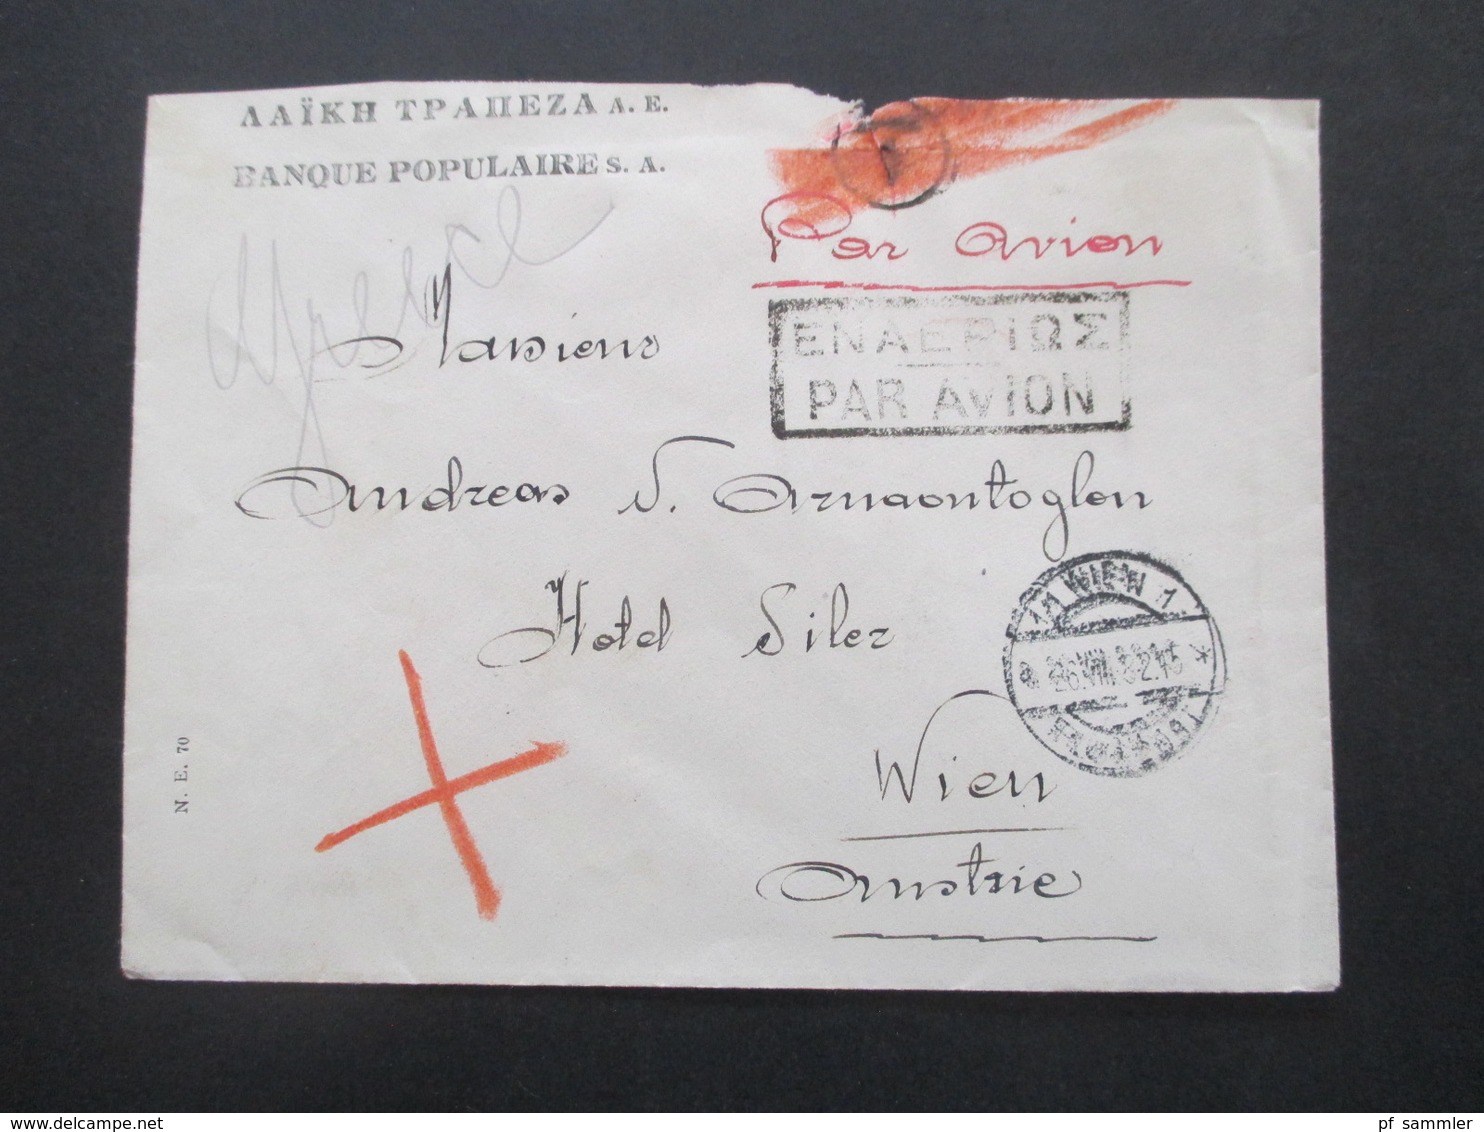 Griechenland 1932 Par Avion Luftpost Banque Populaires Nach Wien Mit Ank. Stempel Rücks. Nr. 350 (4) MeF - Cartas & Documentos